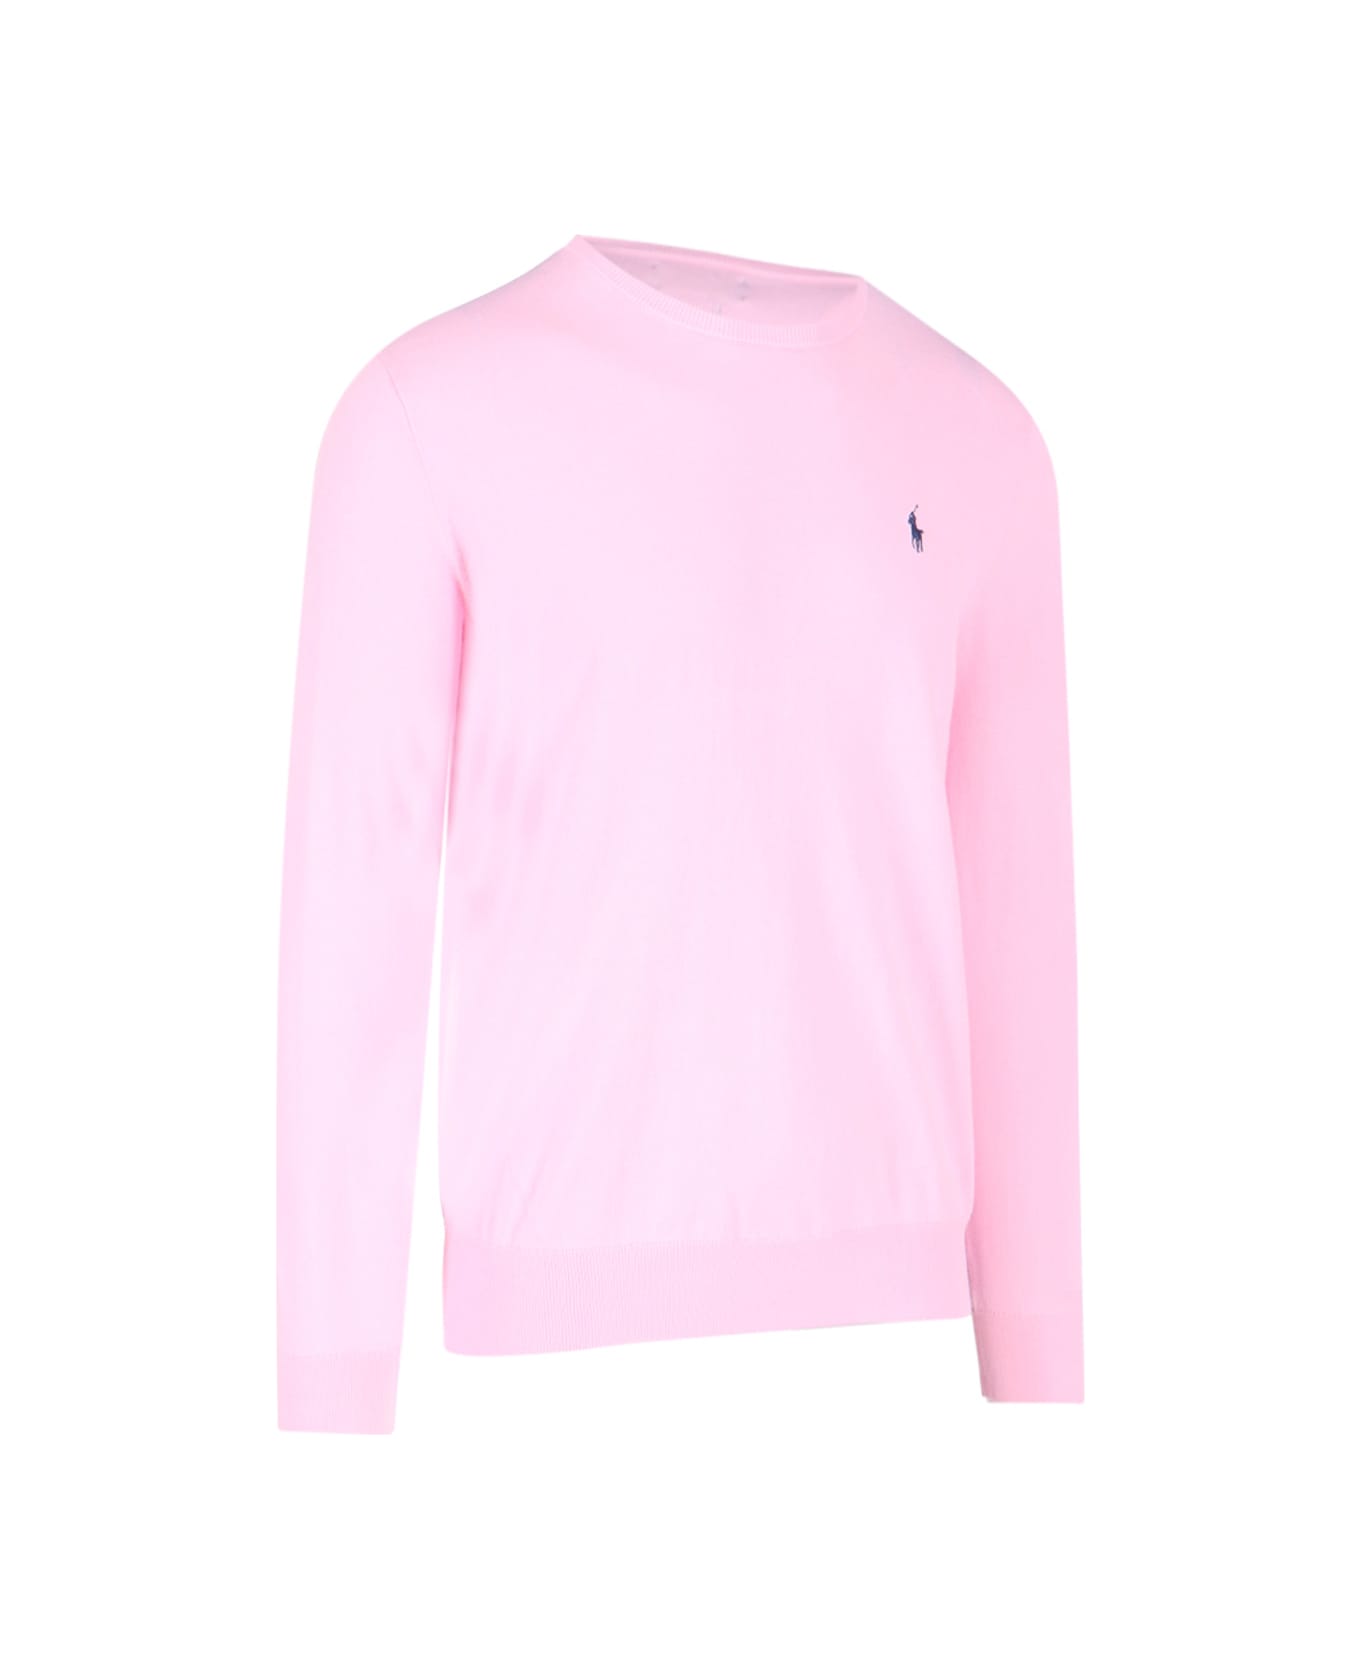 Polo Ralph Lauren Logo Sweater - Pink